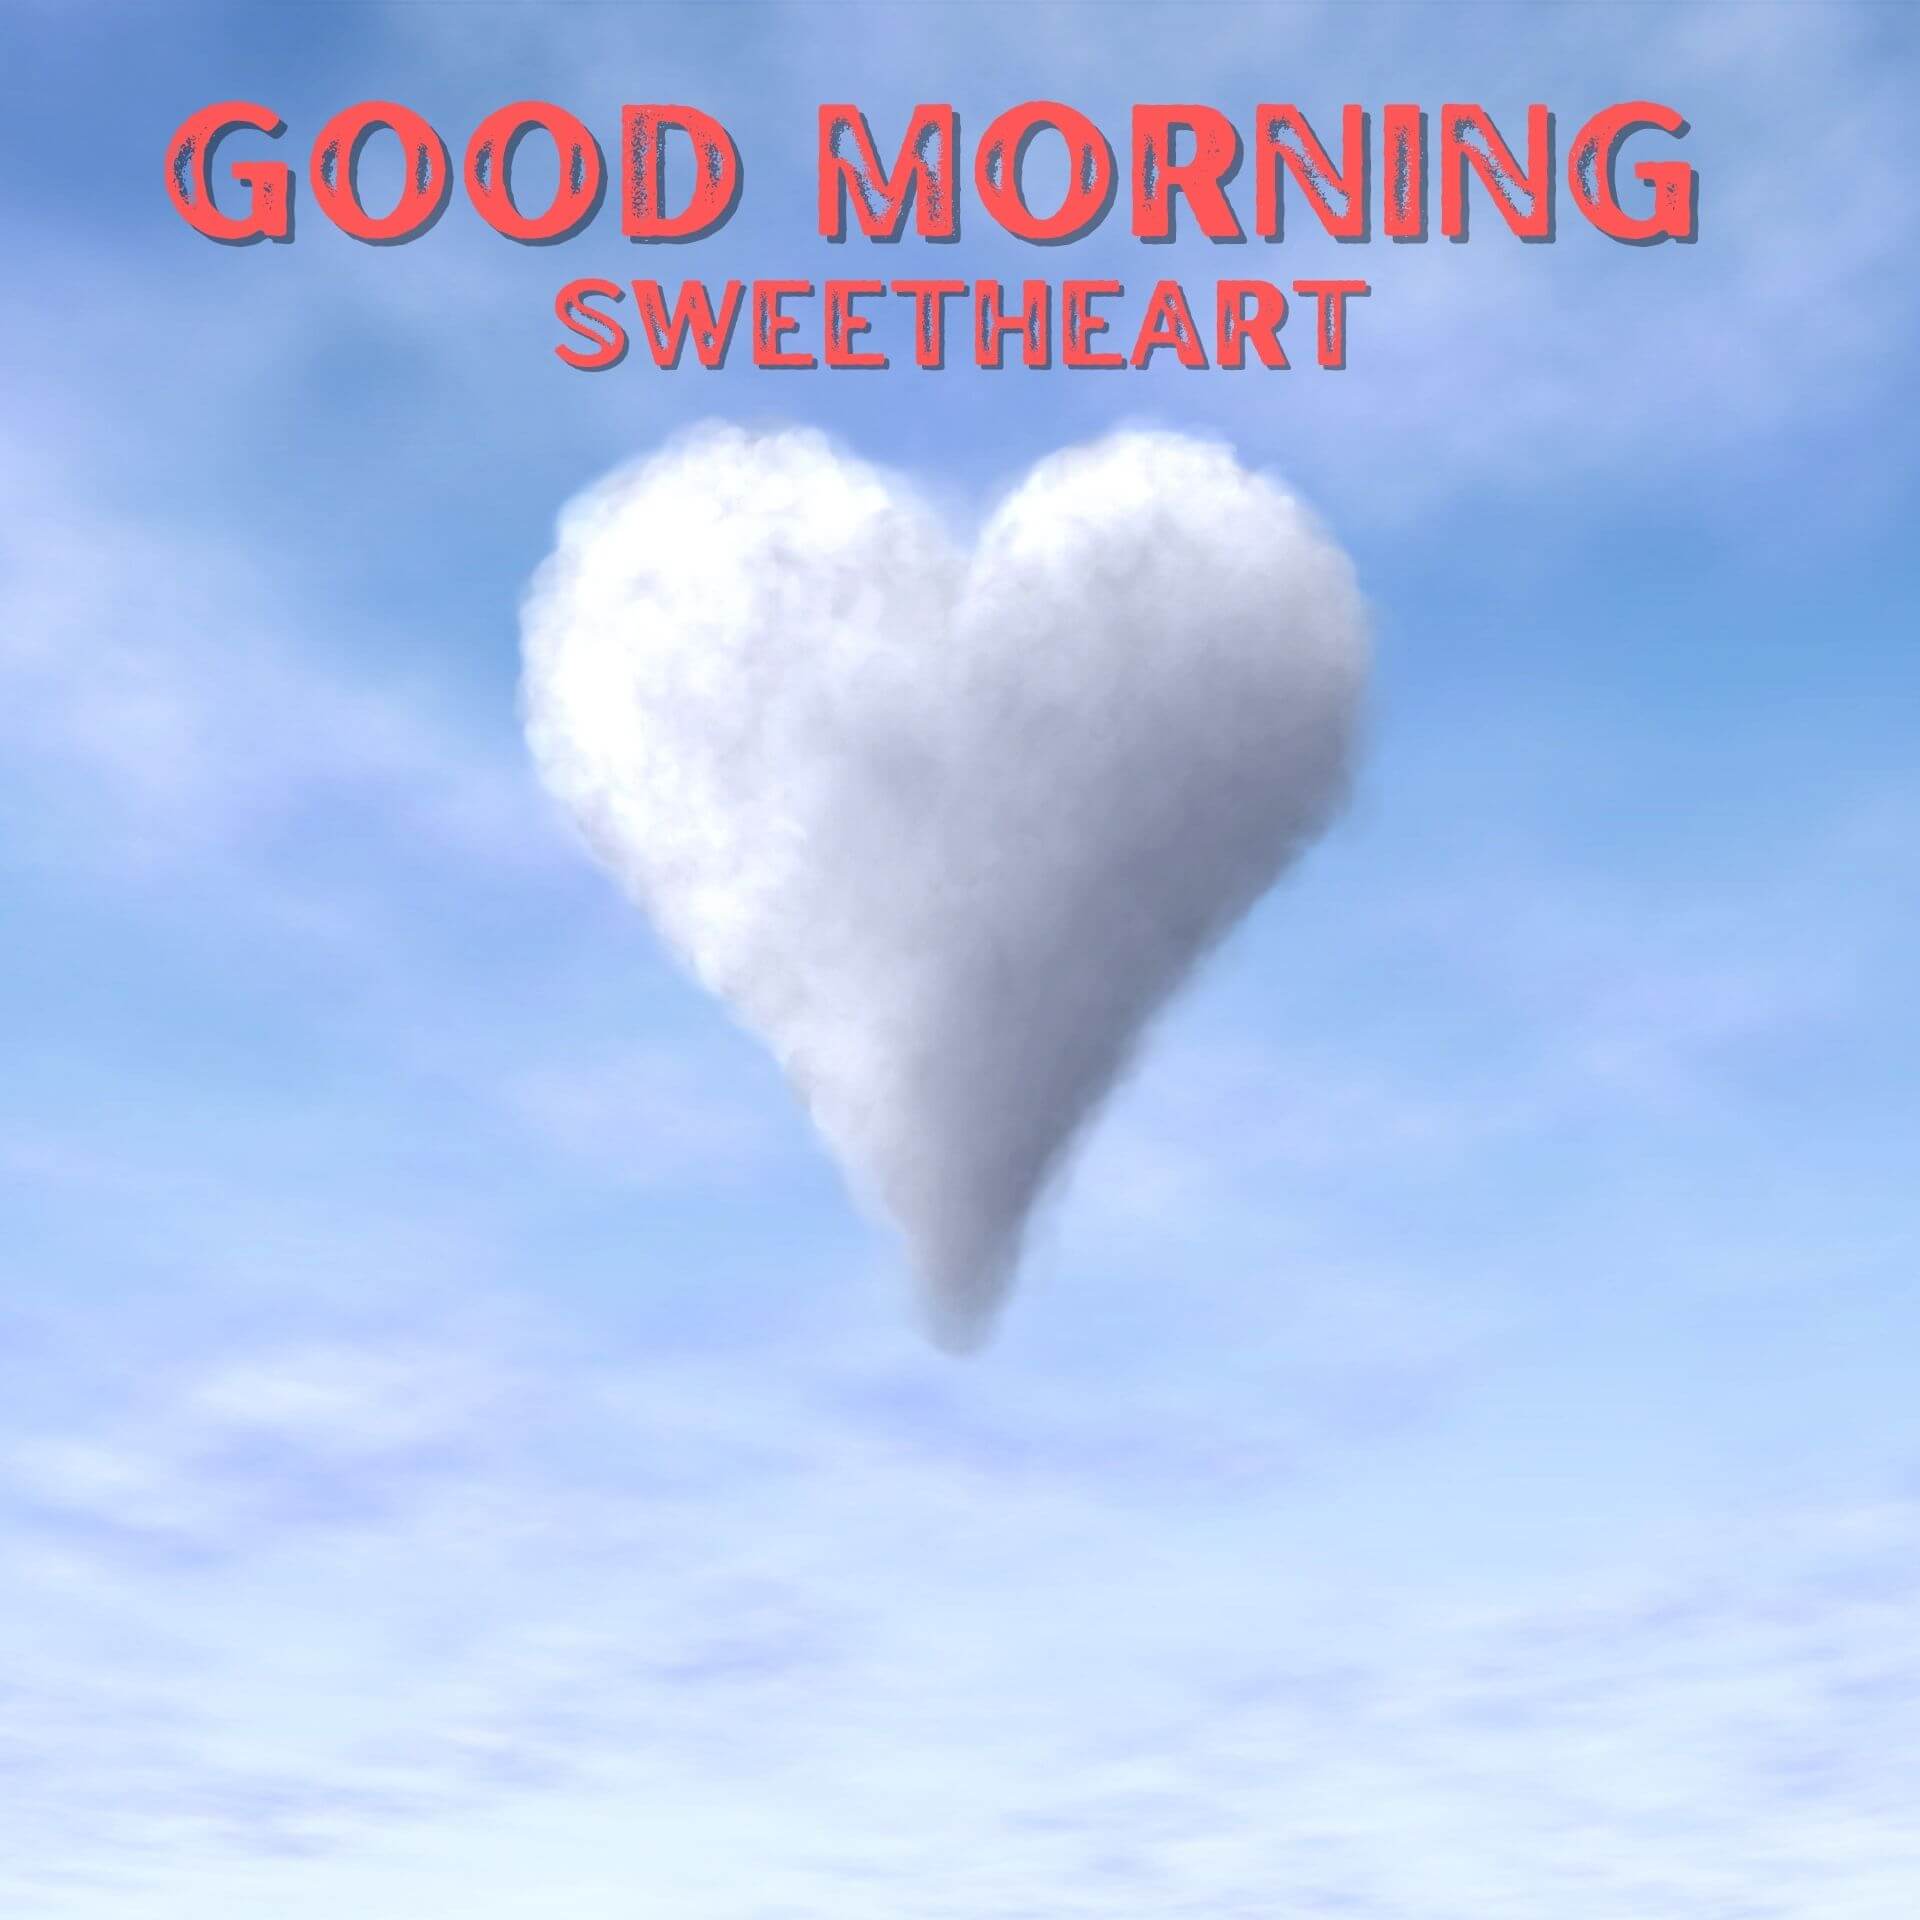 Heart Romantic Good Morning Wallpaper pics Download 2023